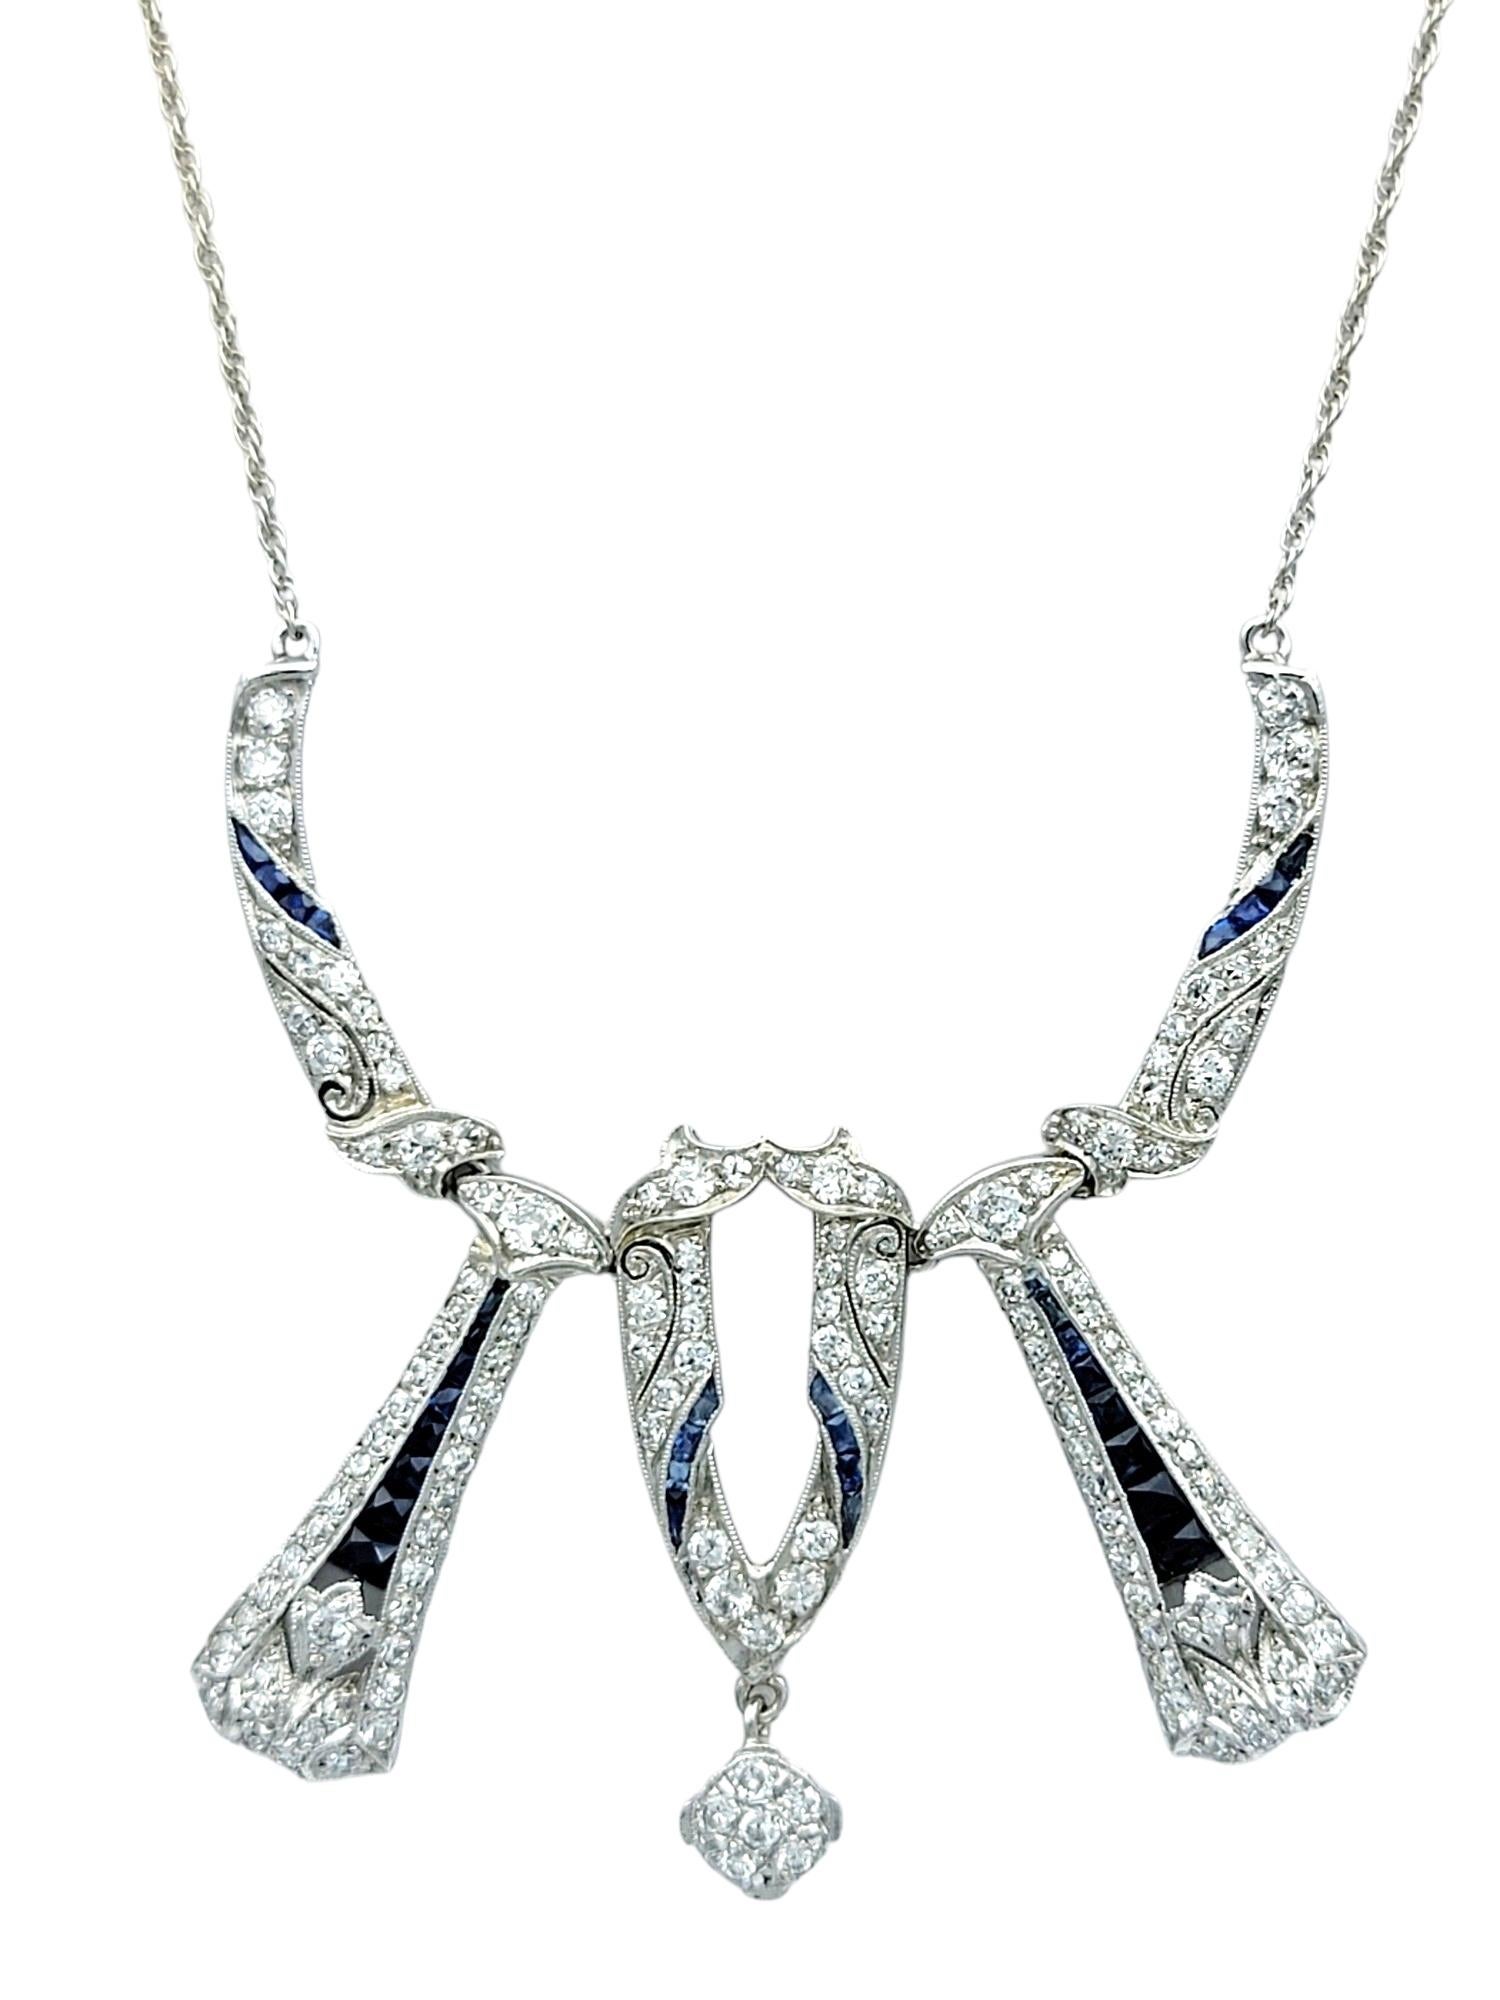 Dieses exquisite Collier besticht durch eine faszinierende Kombination aus Diamanten und blauen Saphiren, die in 14 Karat Weißgold gefasst sind. Das geometrische Design der Halskette spiegelt die Eleganz und Raffinesse des Art déco wider und